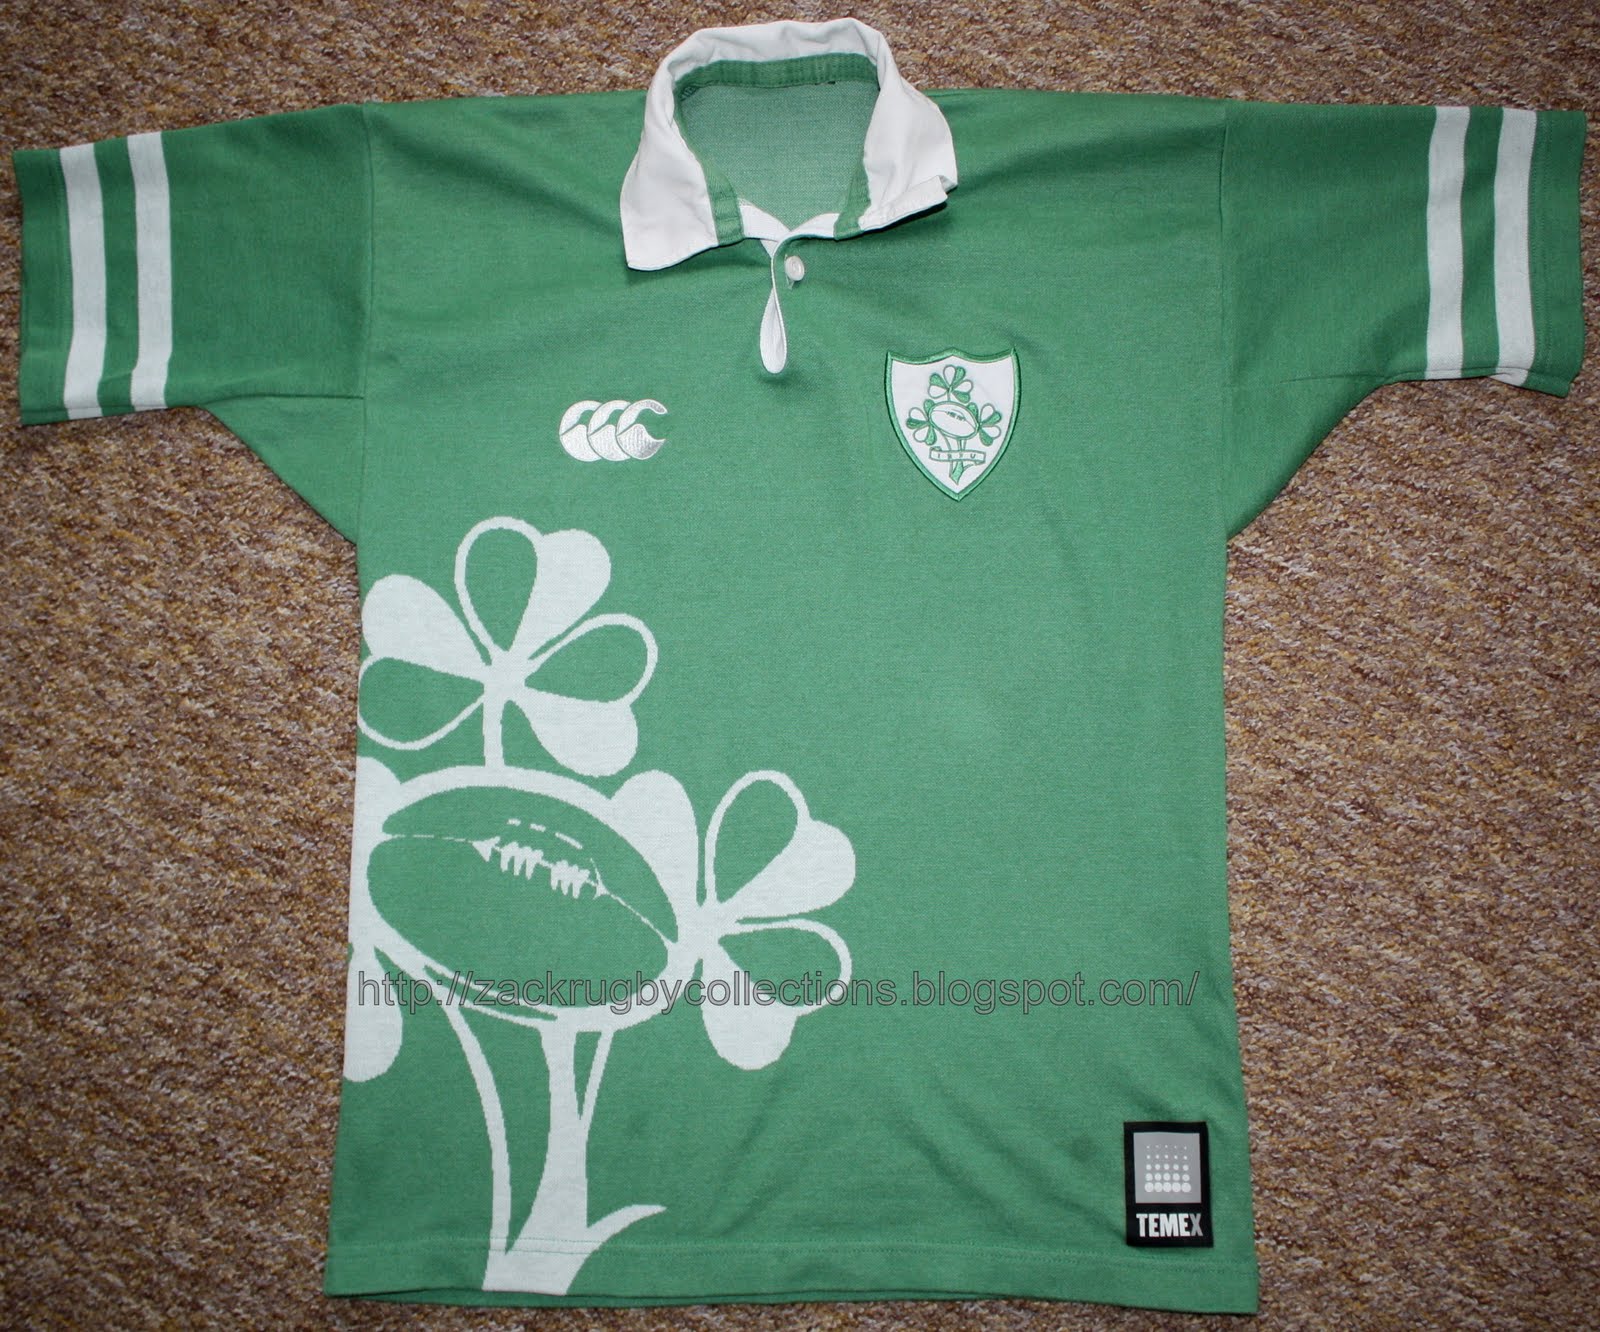 vintage irish rugby jersey